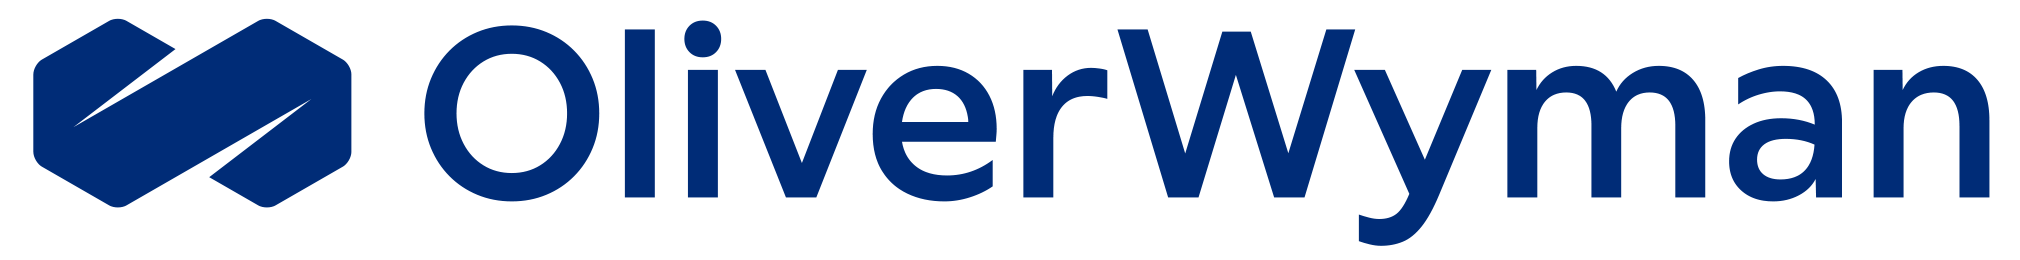 OliverWyman 2021 logo